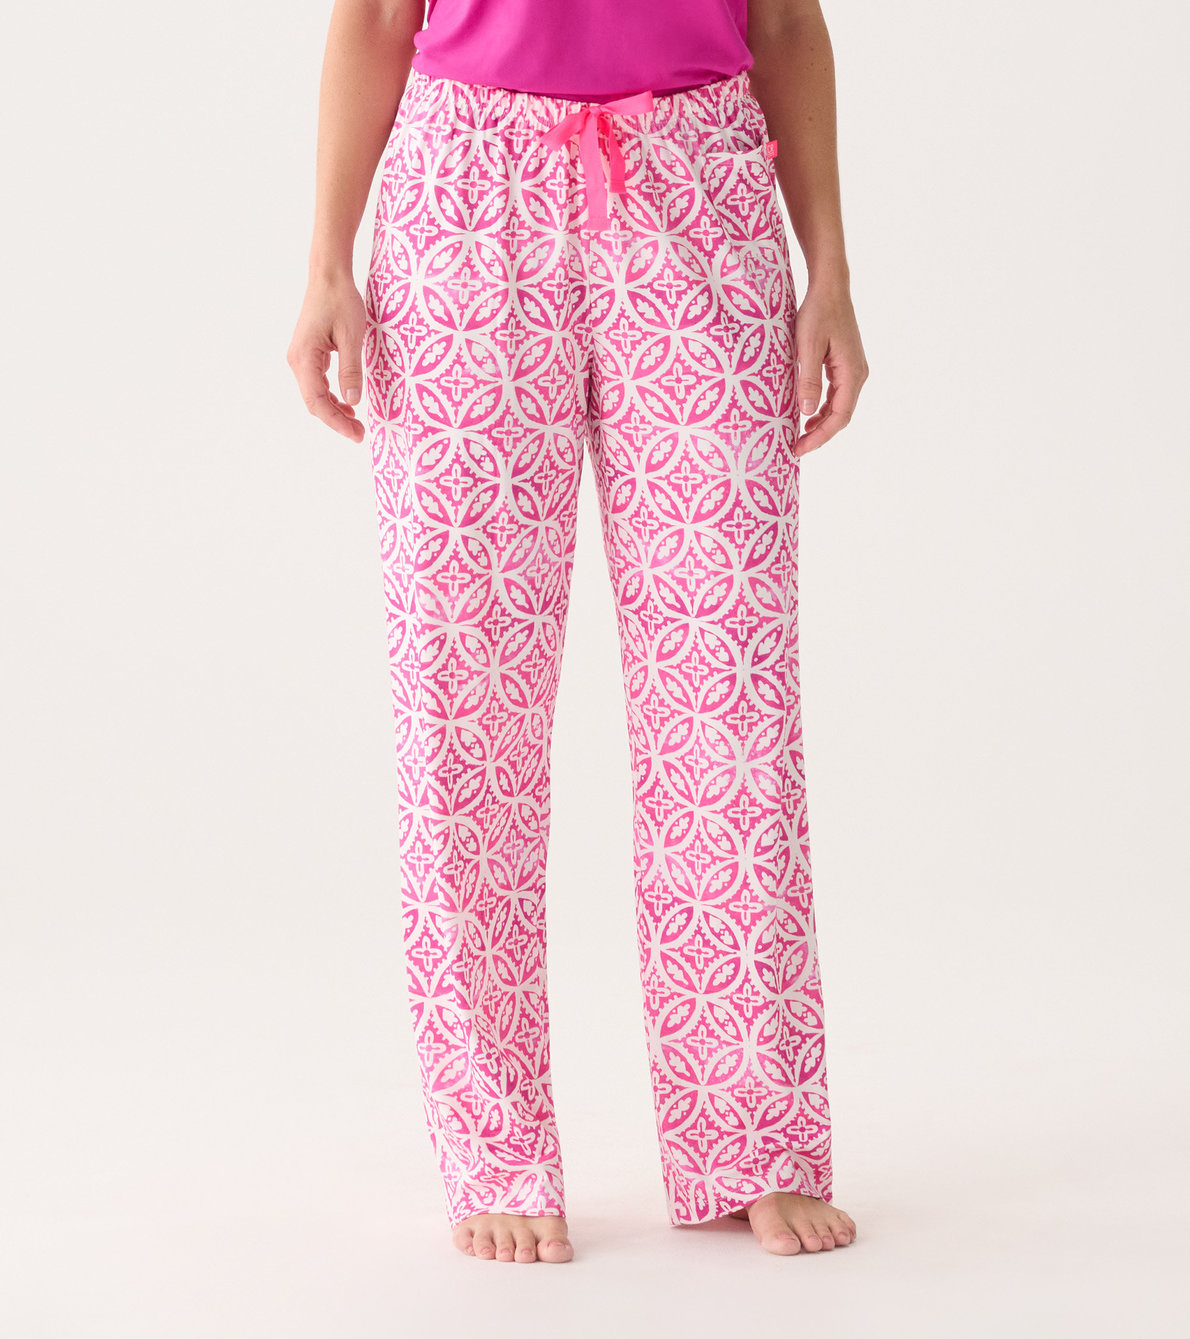 View larger image of Capelton Road Women's Pink Lotus Mandala Pajama Pants